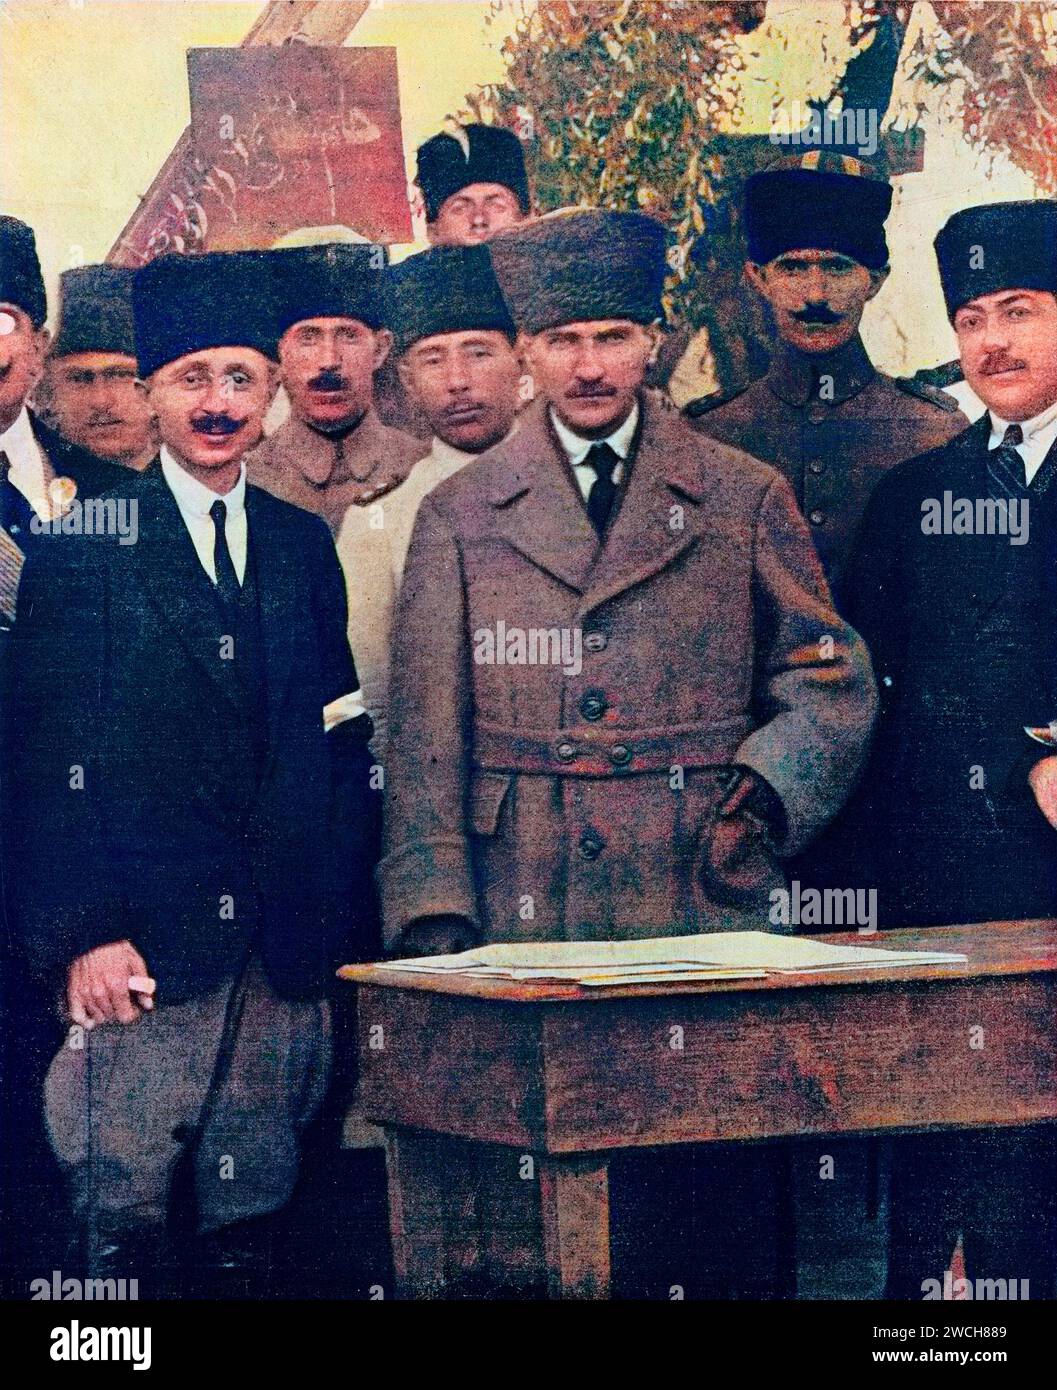 Türkischer Armeeoffizier und Politiker Mustafa Kemal Atatürk mit seinem Stabschef, Türkei, 1922 - späteres farbiges Foto - spätere Färbung. Stockfoto